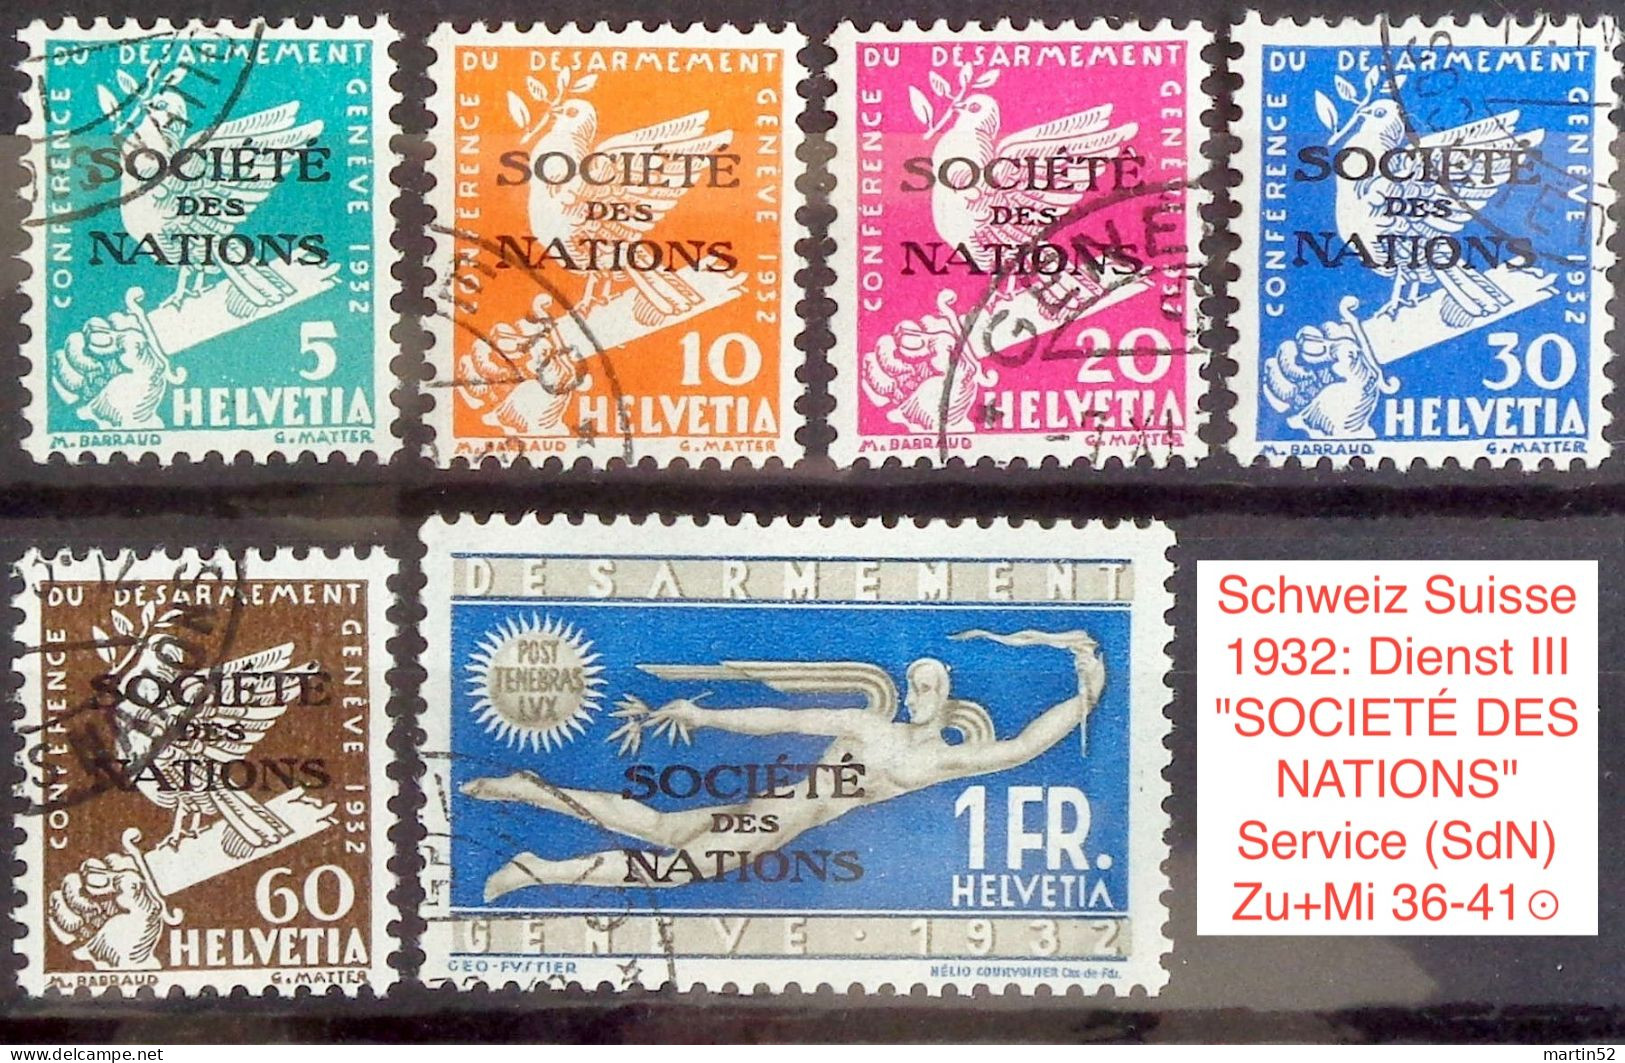 Schweiz Suisse 1932: Dienst III "SOCIÉTÉ DES NATIONS" Service (SdN) Zu+Mi 36-41 Mit O GENÈVE SOCIÉTÉ DES (Zu CHF 140.00) - Officials